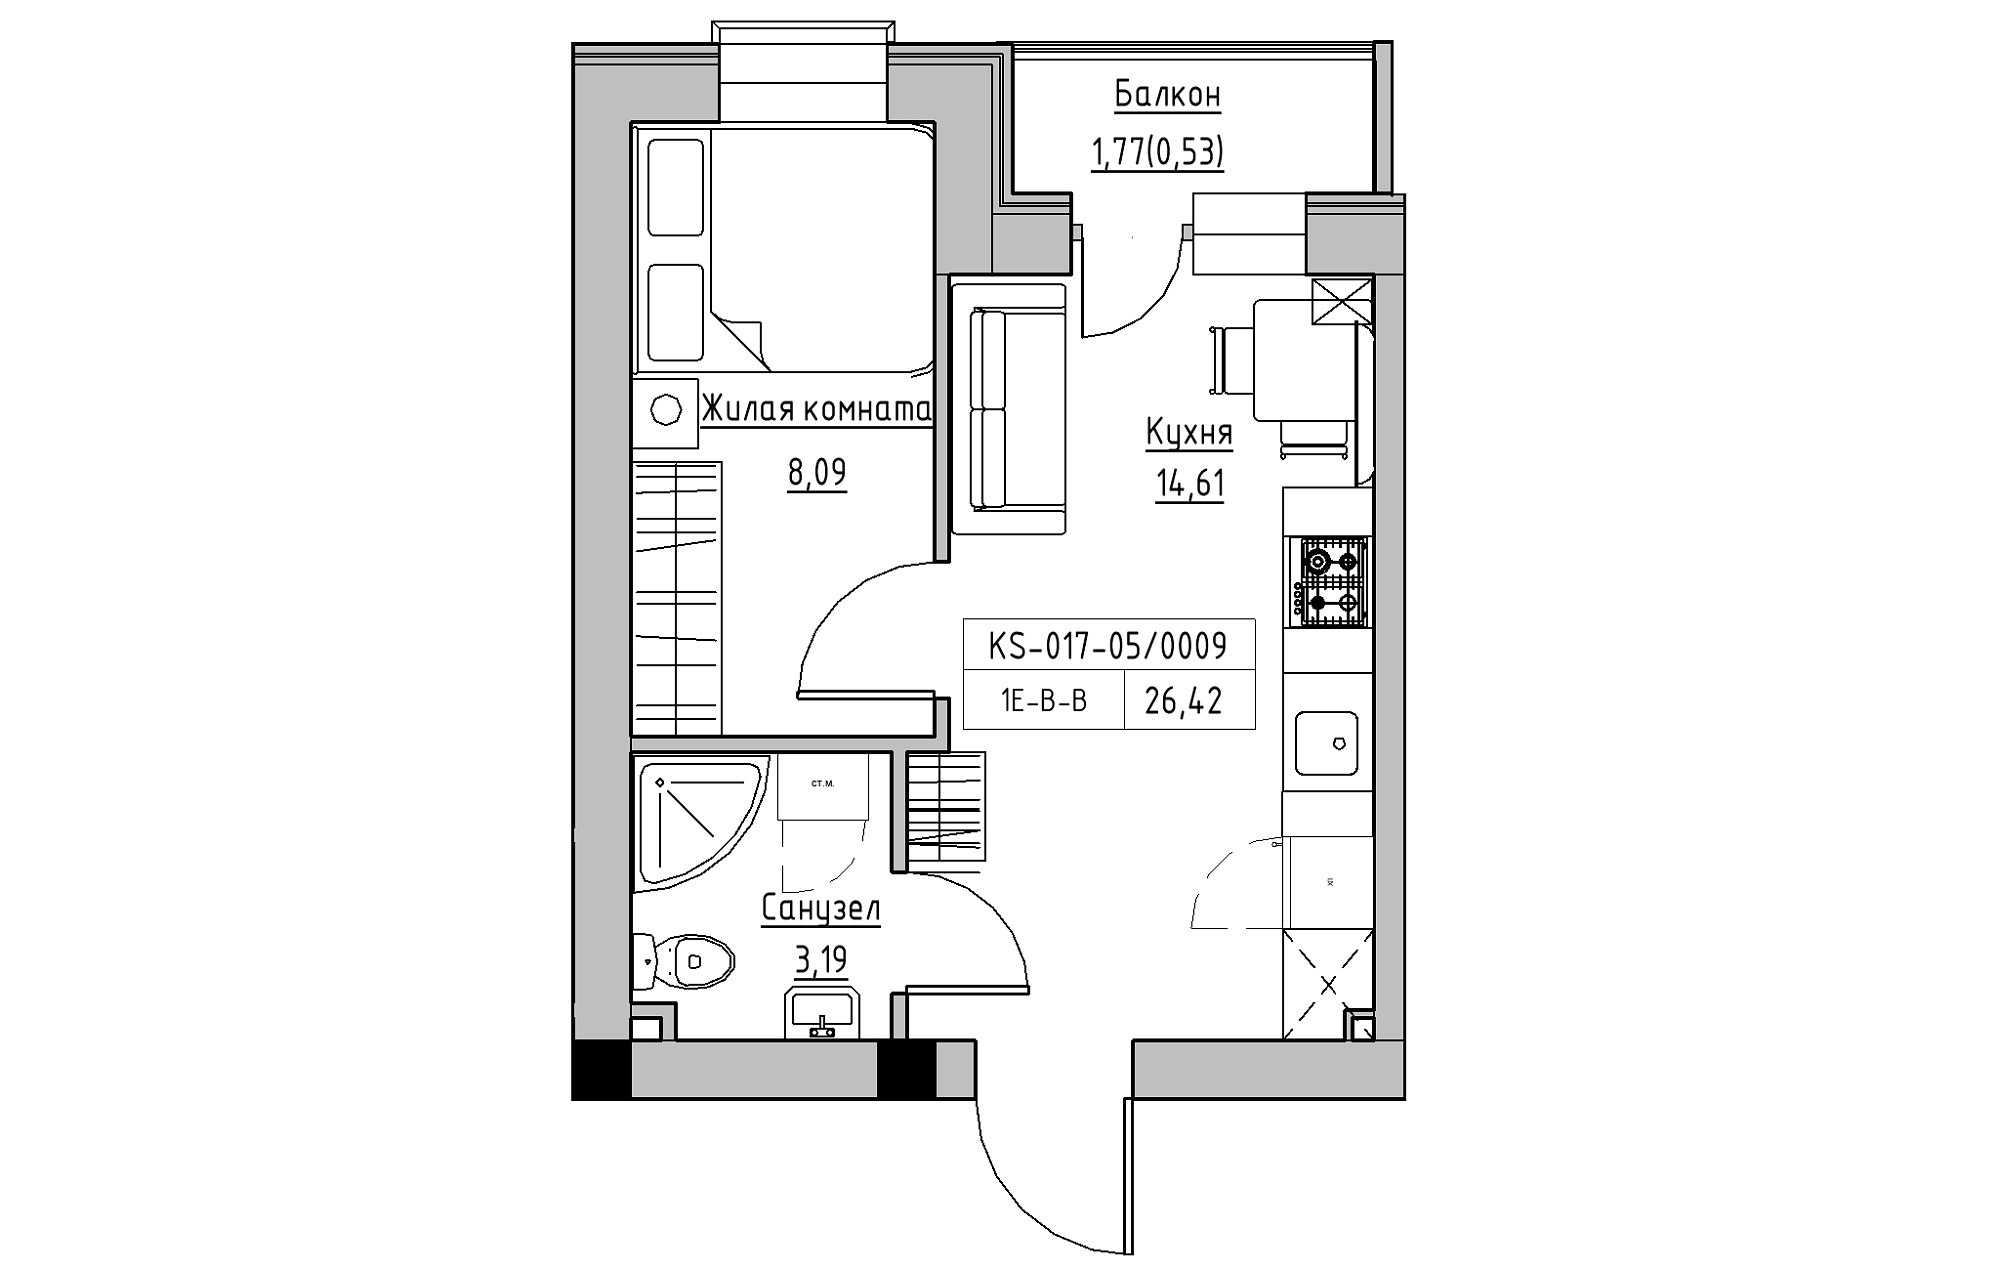 Планування 1-к квартира площею 26.42м2, KS-017-05/0009.